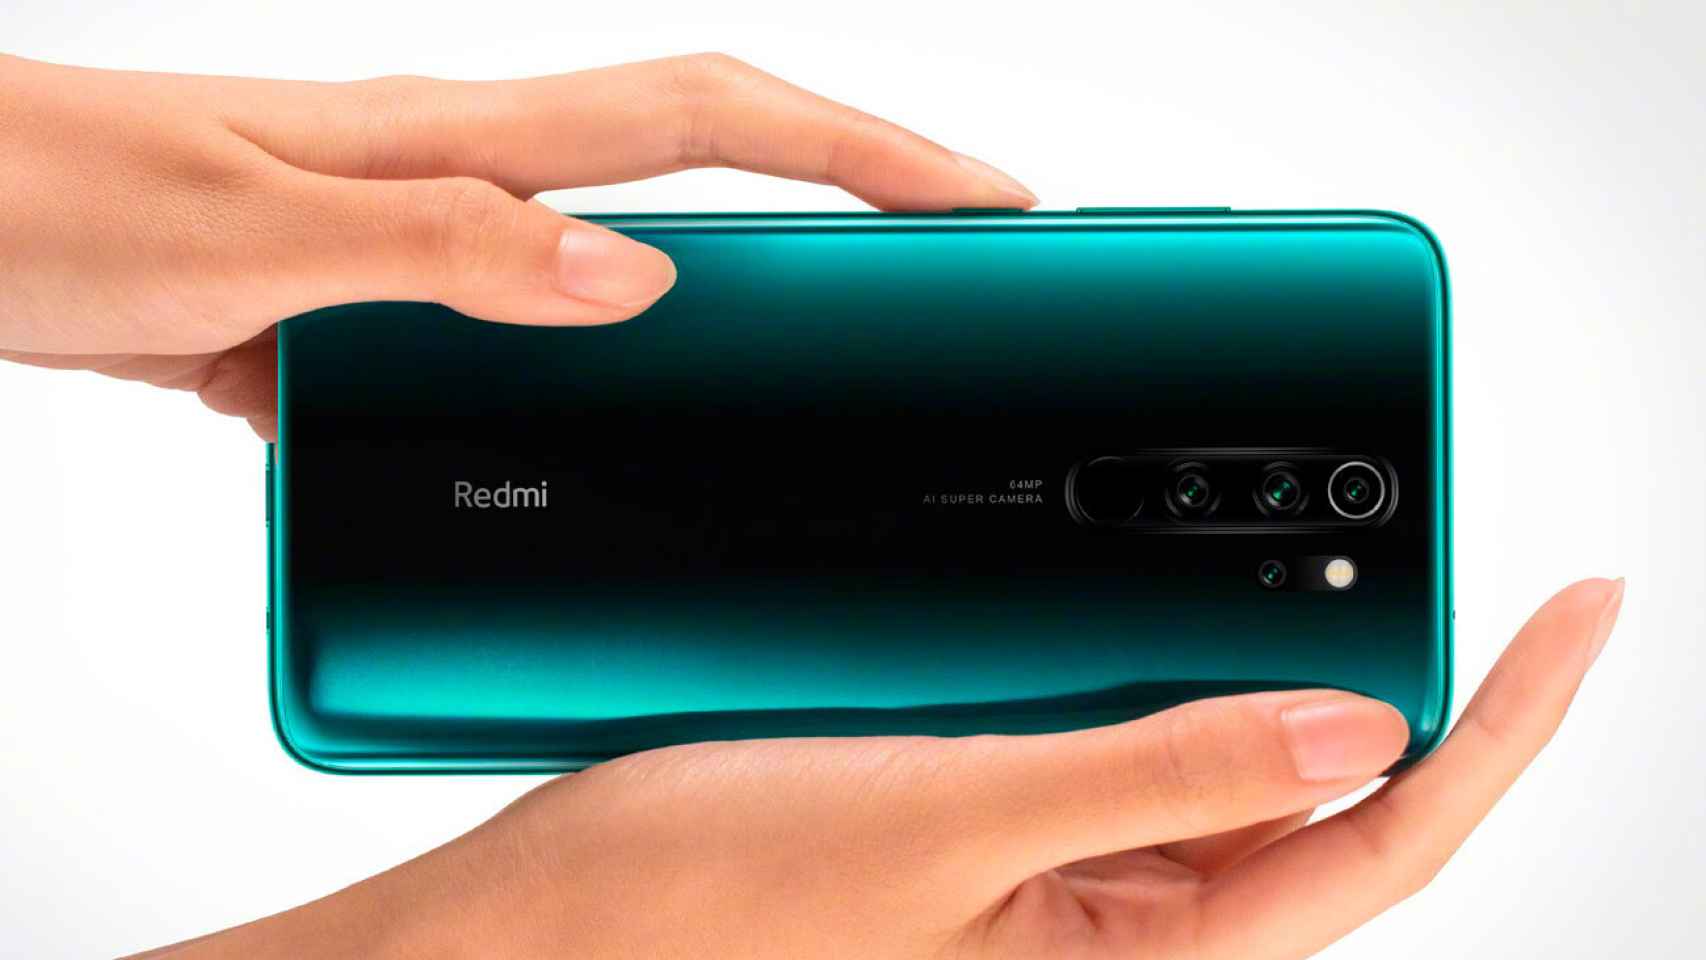 El Redmi Note 8 Pro se enfoca a los juegos: nuevas fotos filtradas